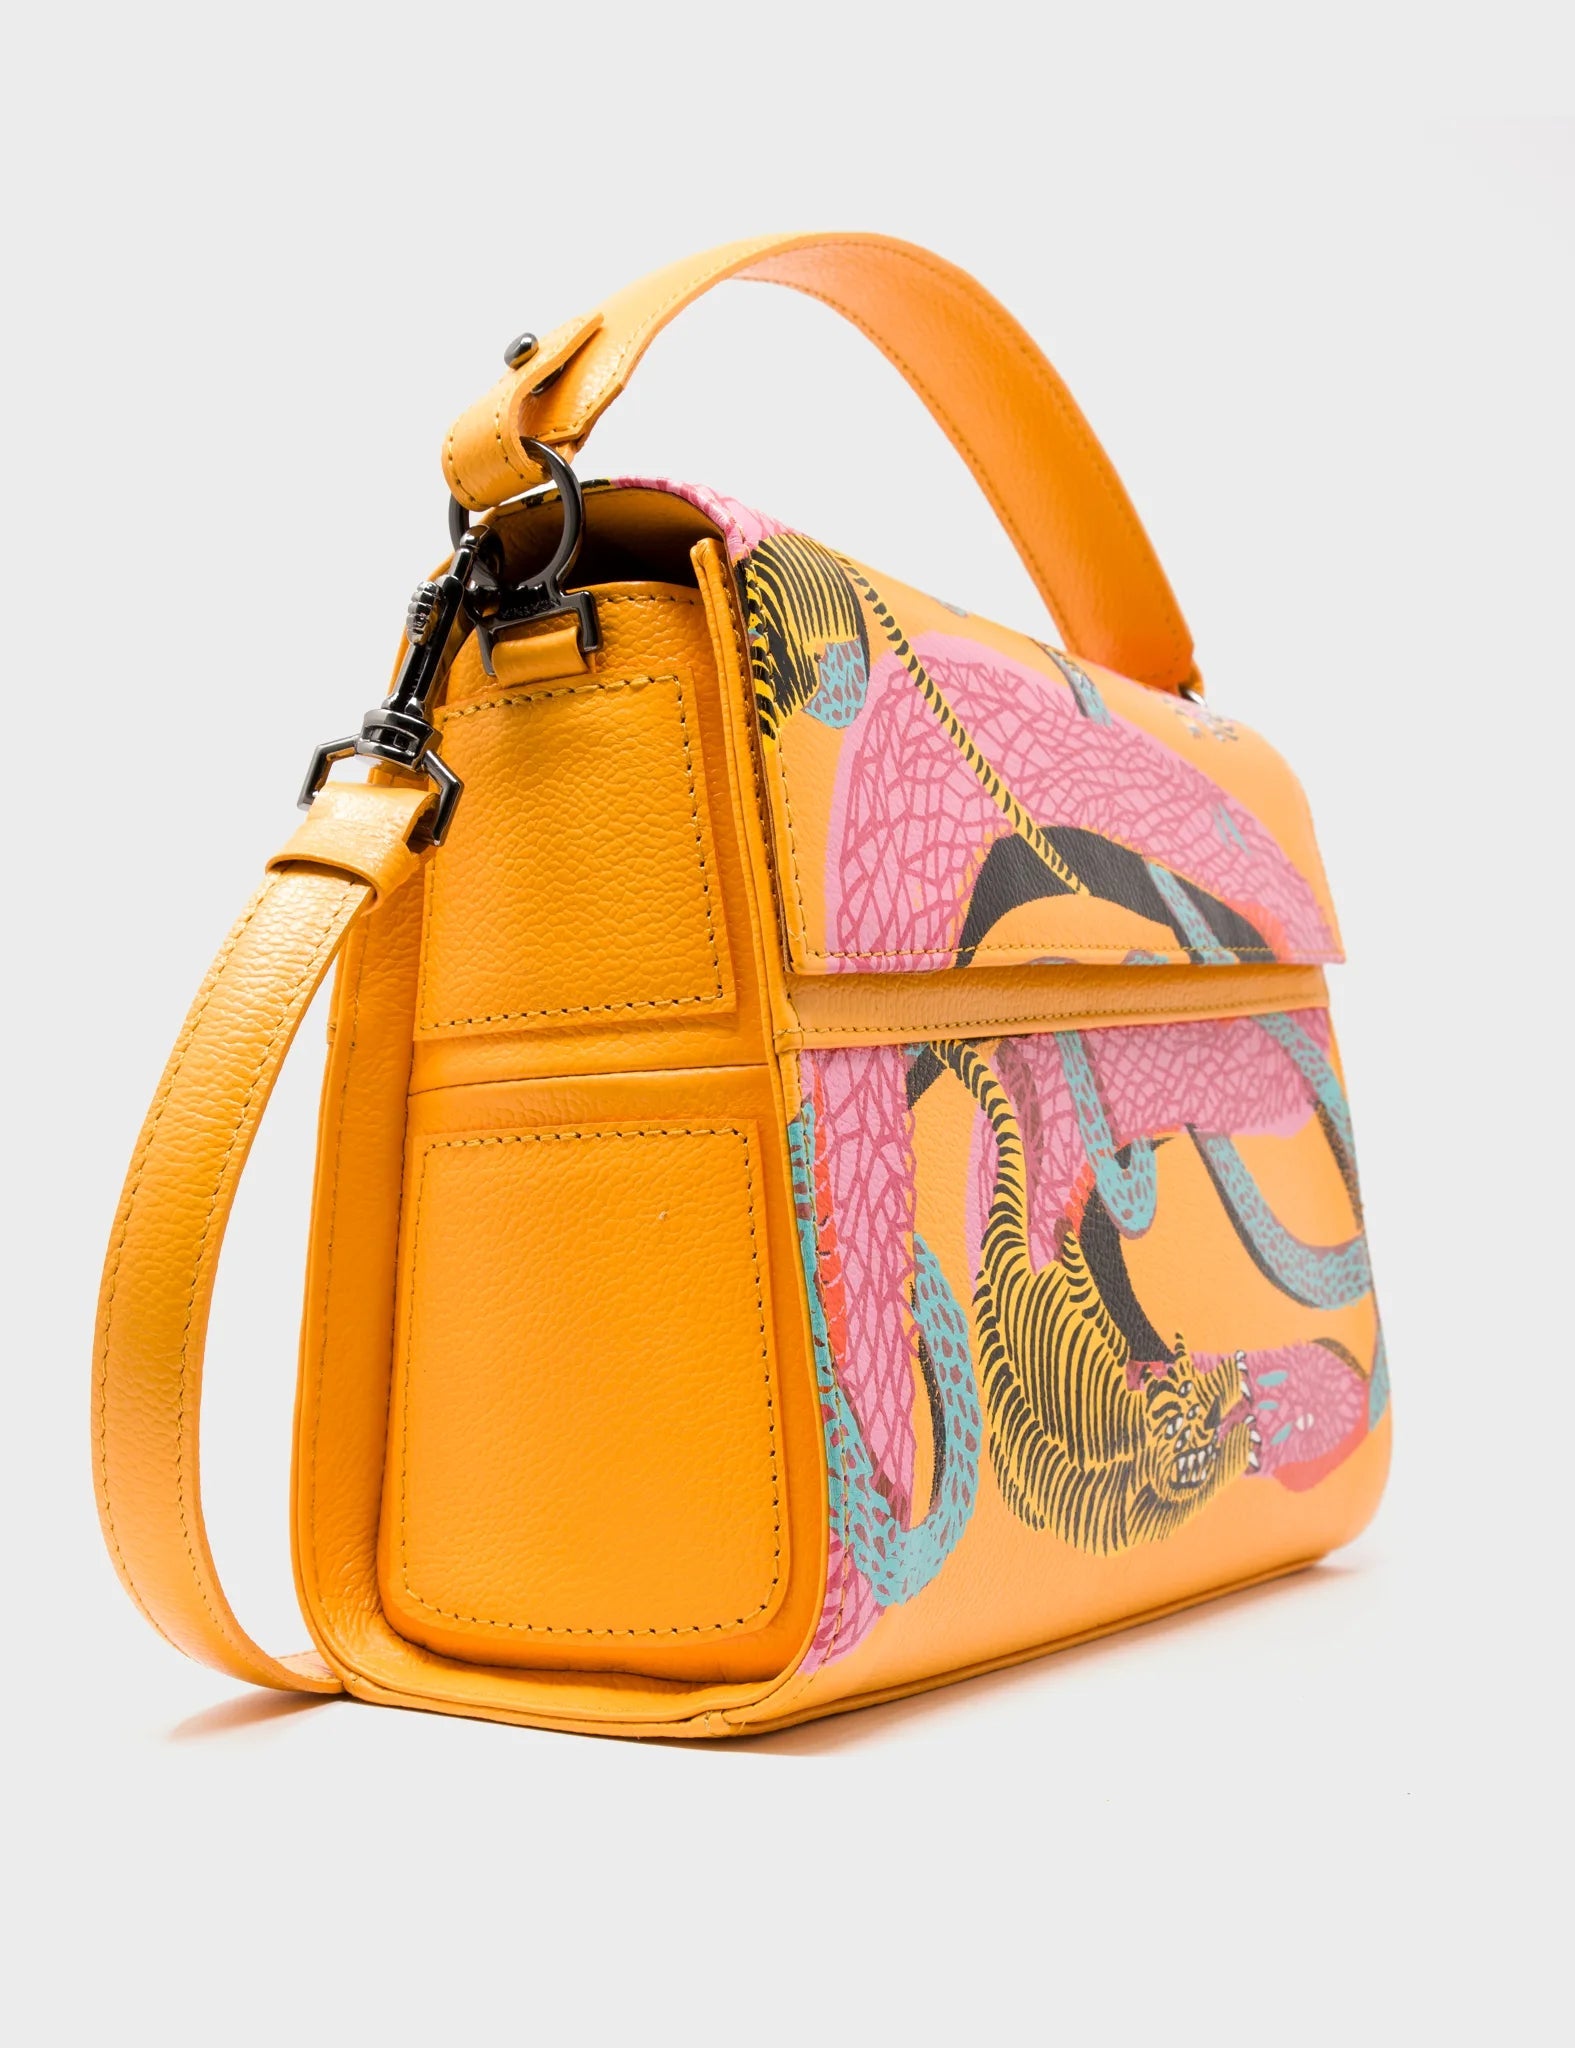 Bag Medium Crossbody Handbag Marigold Leather - Tangle Tiger and Snake Print - Side